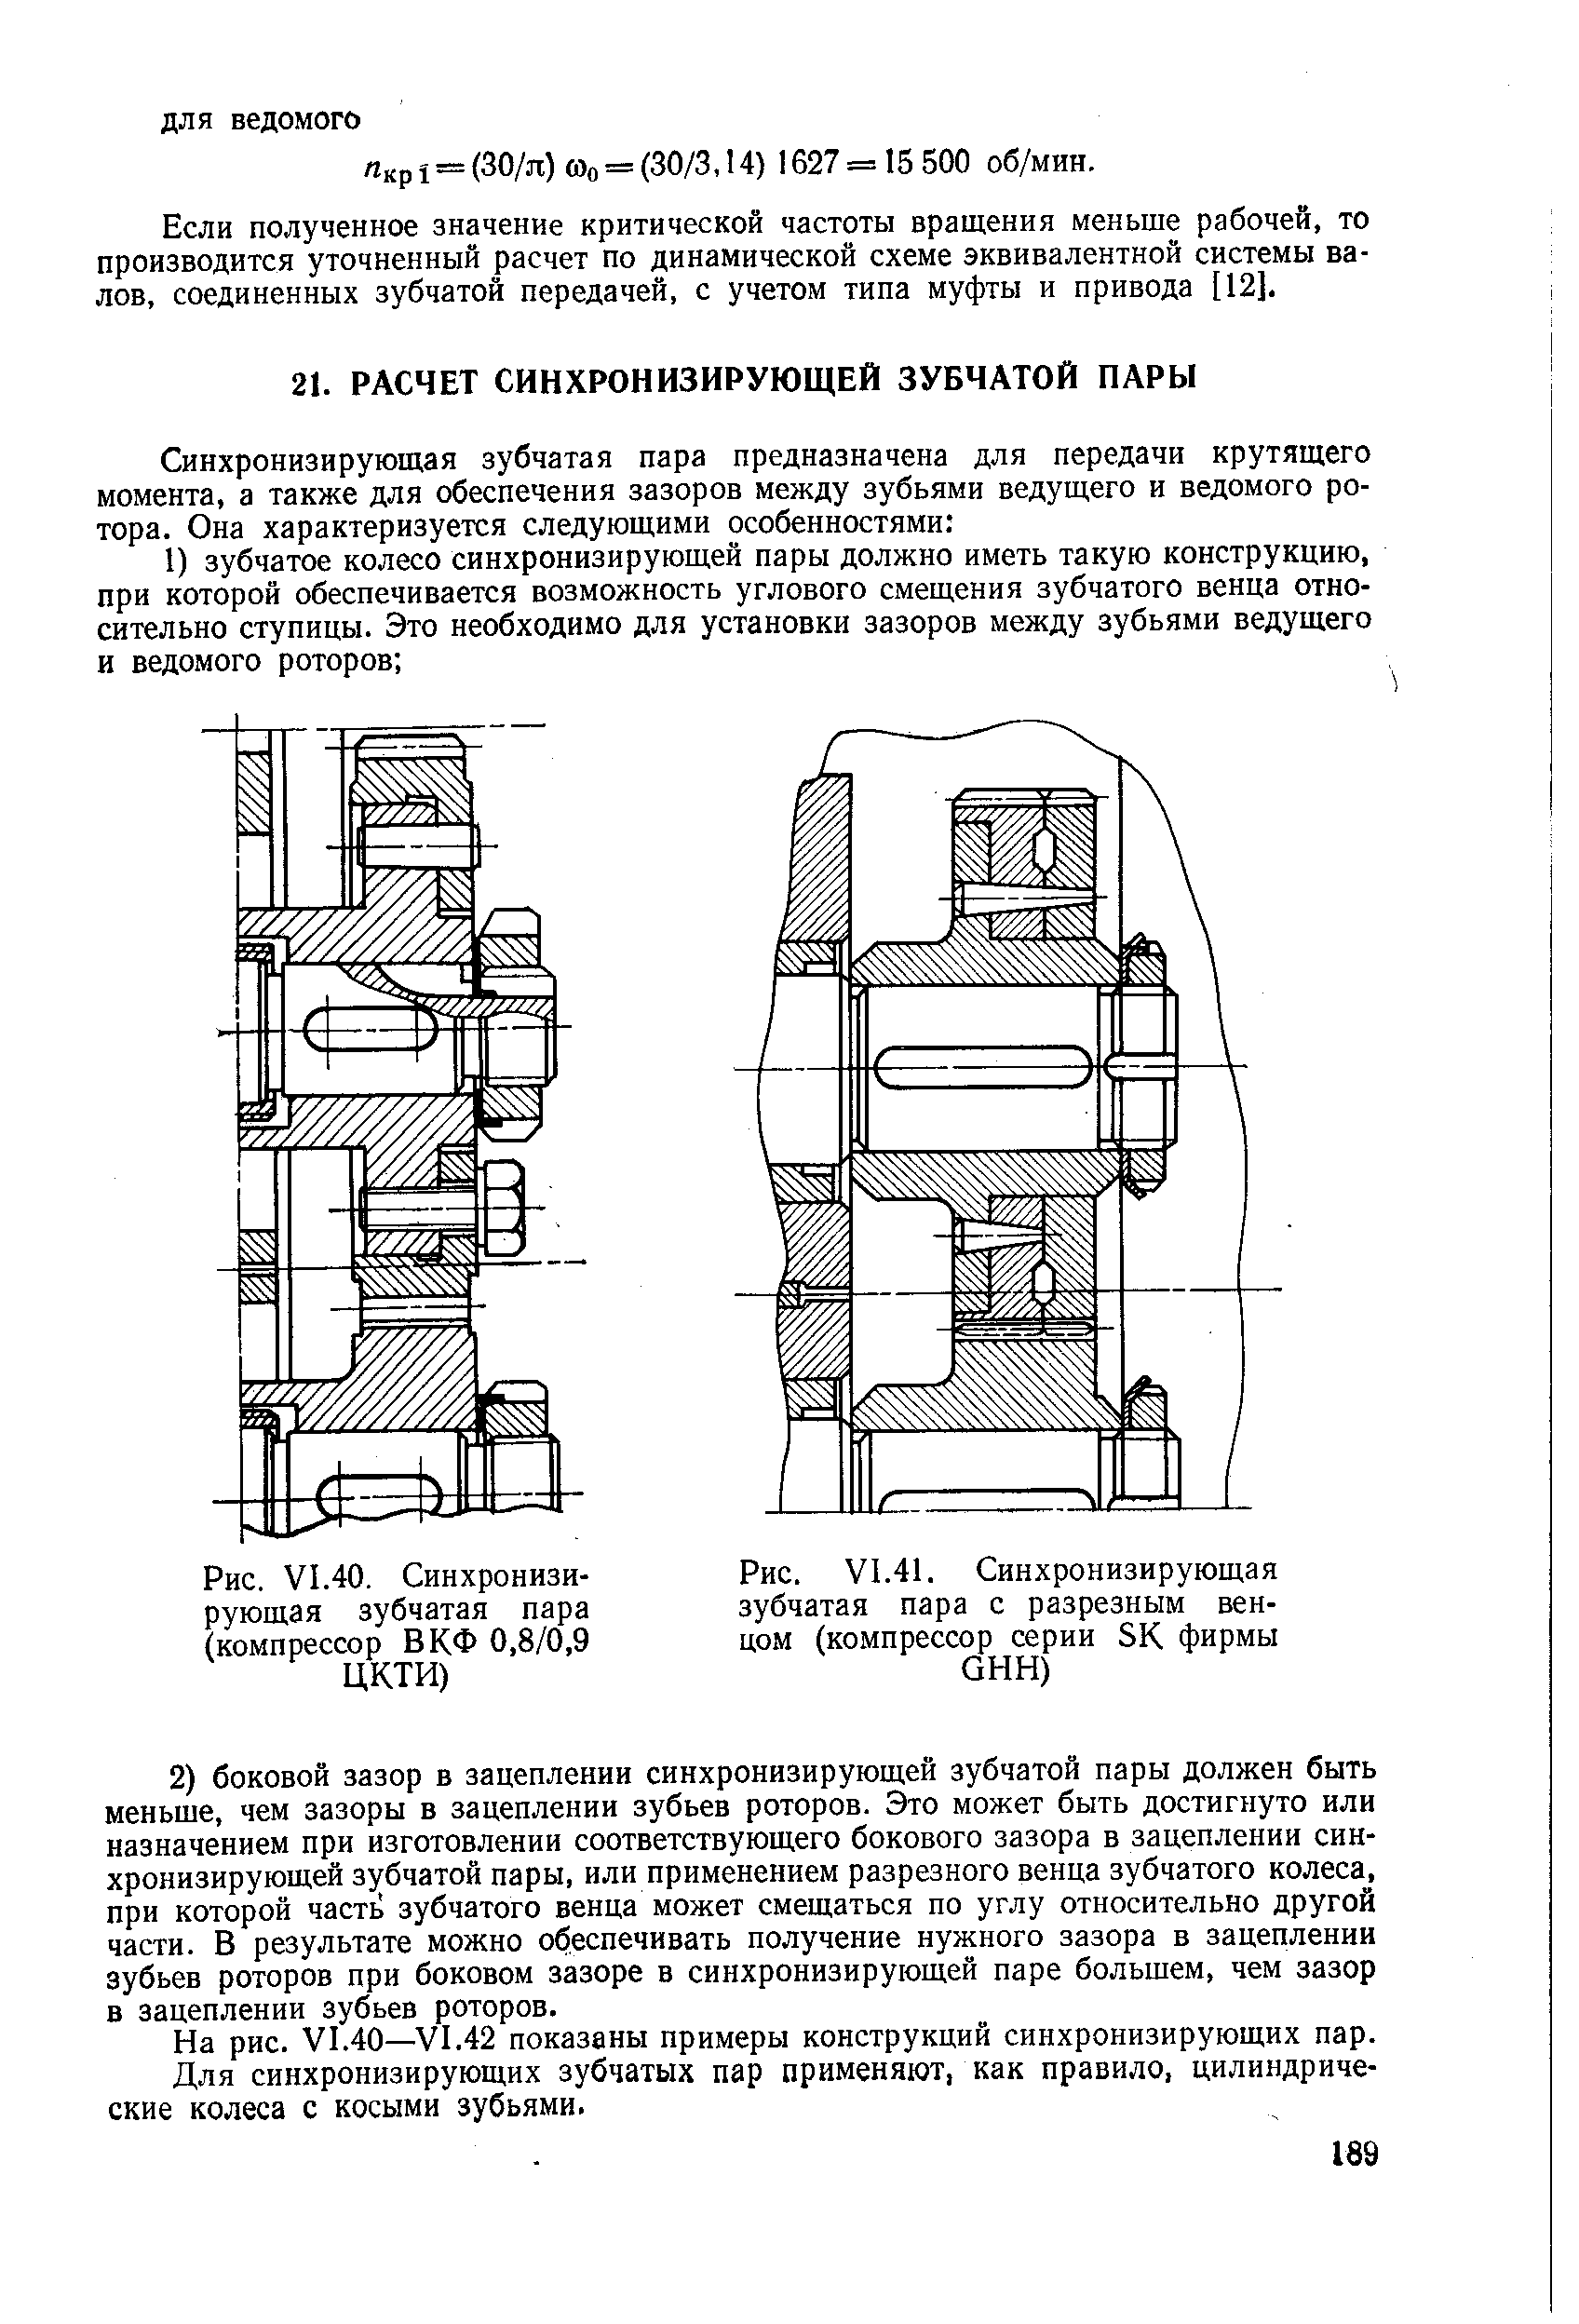 На рис. VI.40—VI.42 показаны примеры конструкций синхронизирующих пар.